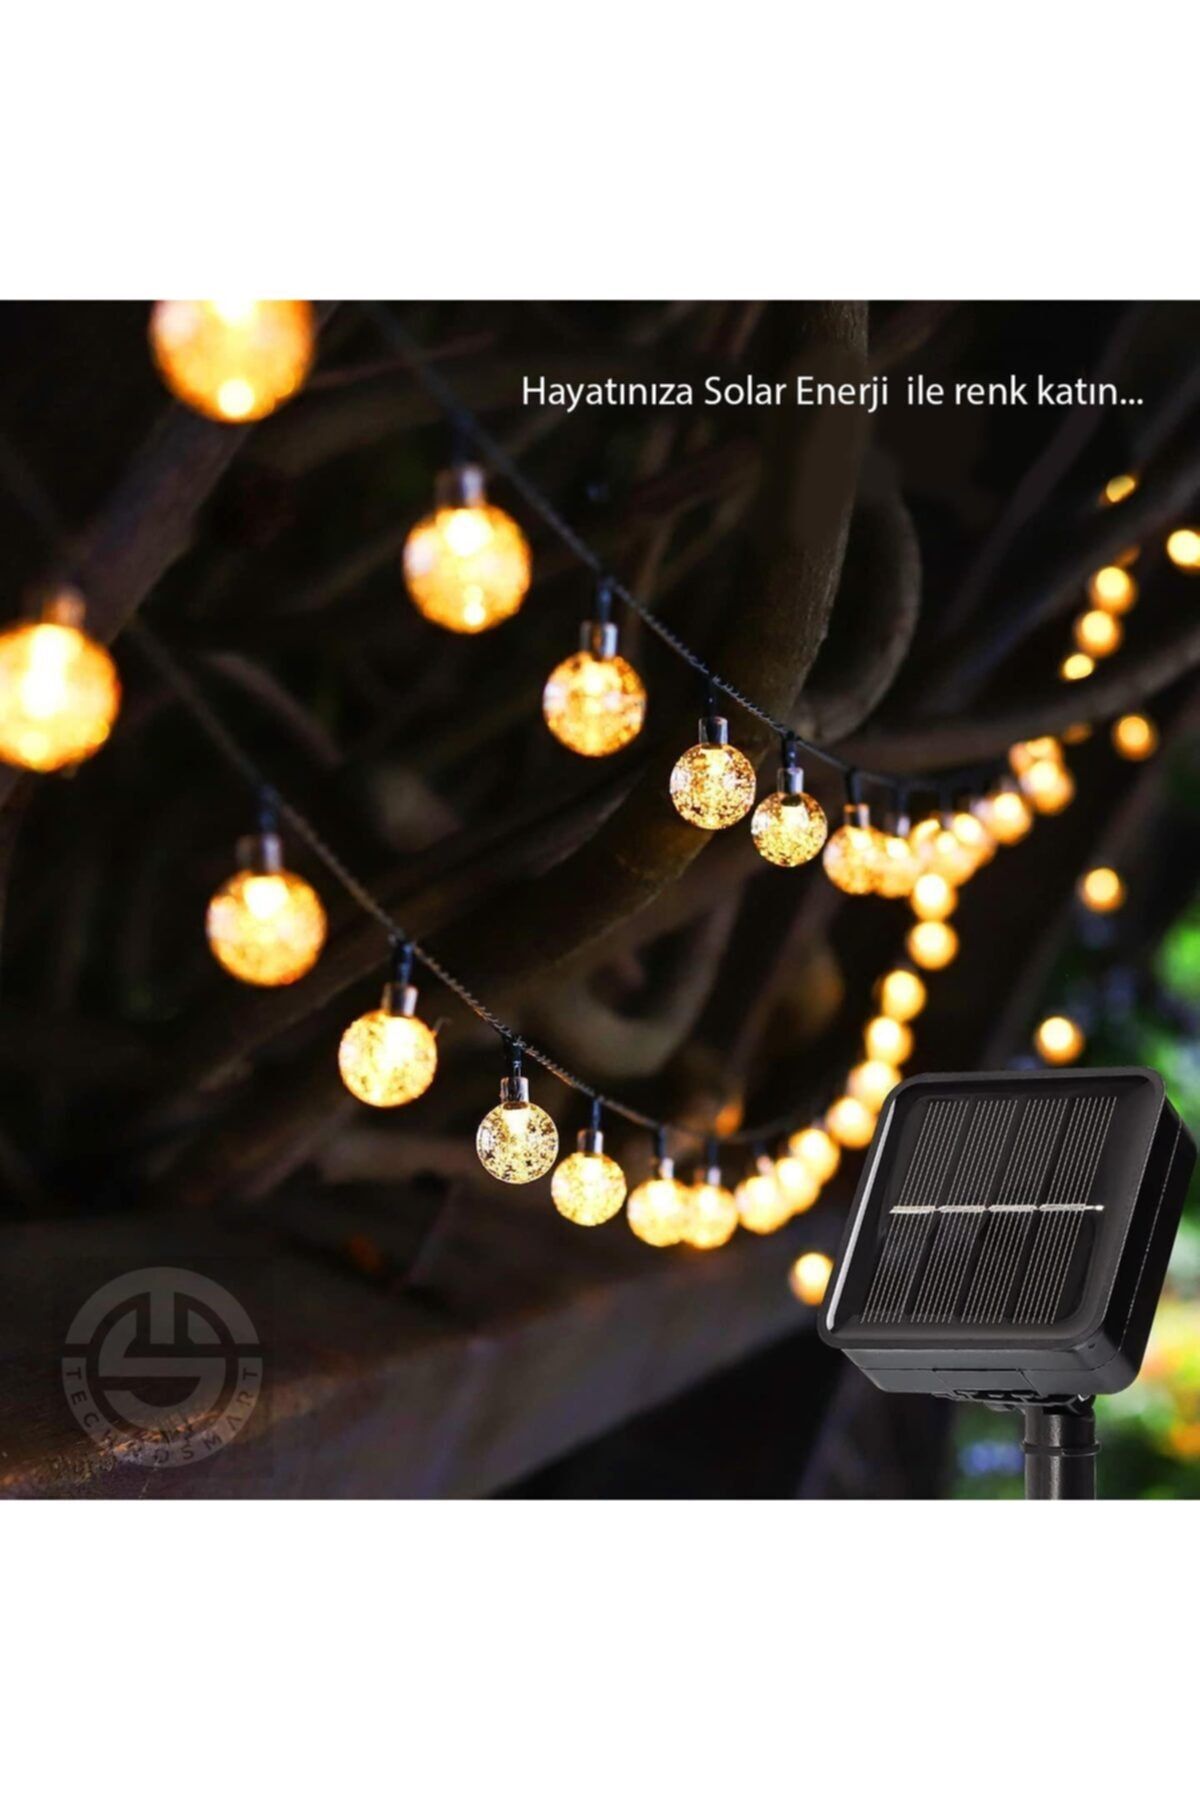 TechnoSmart 20 Ledli Solar Kristal Baloncuklu Top Bahçe Aydınlatma Dekorasyon Güneşenerji Sarı Işık